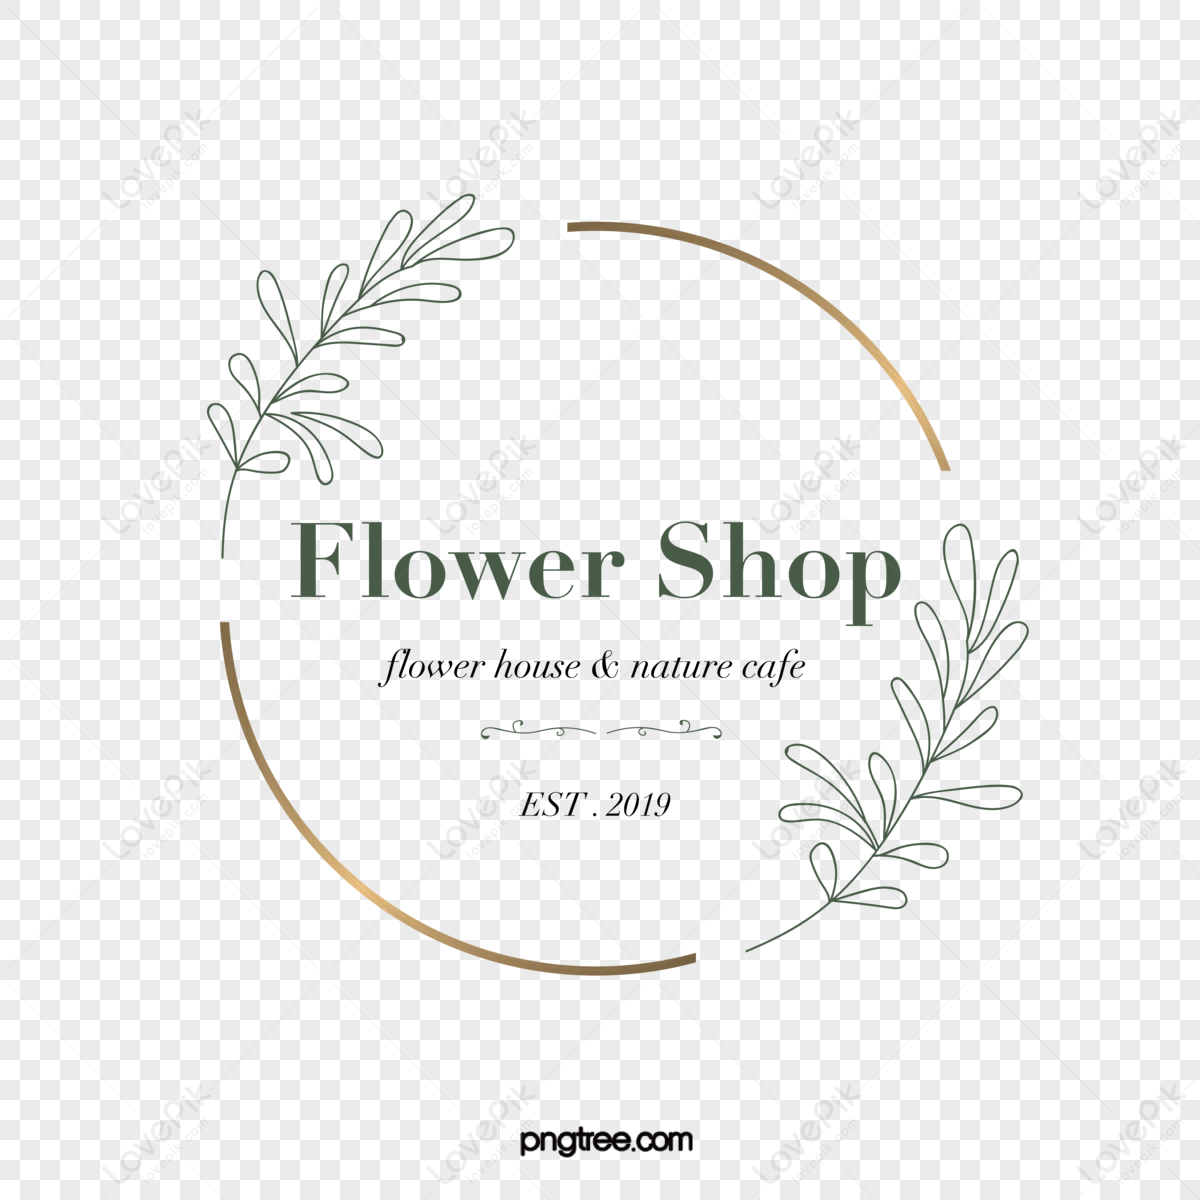 Flowers Logo PNG Images, Transparent Flowers Logo Image Download - PNGitem